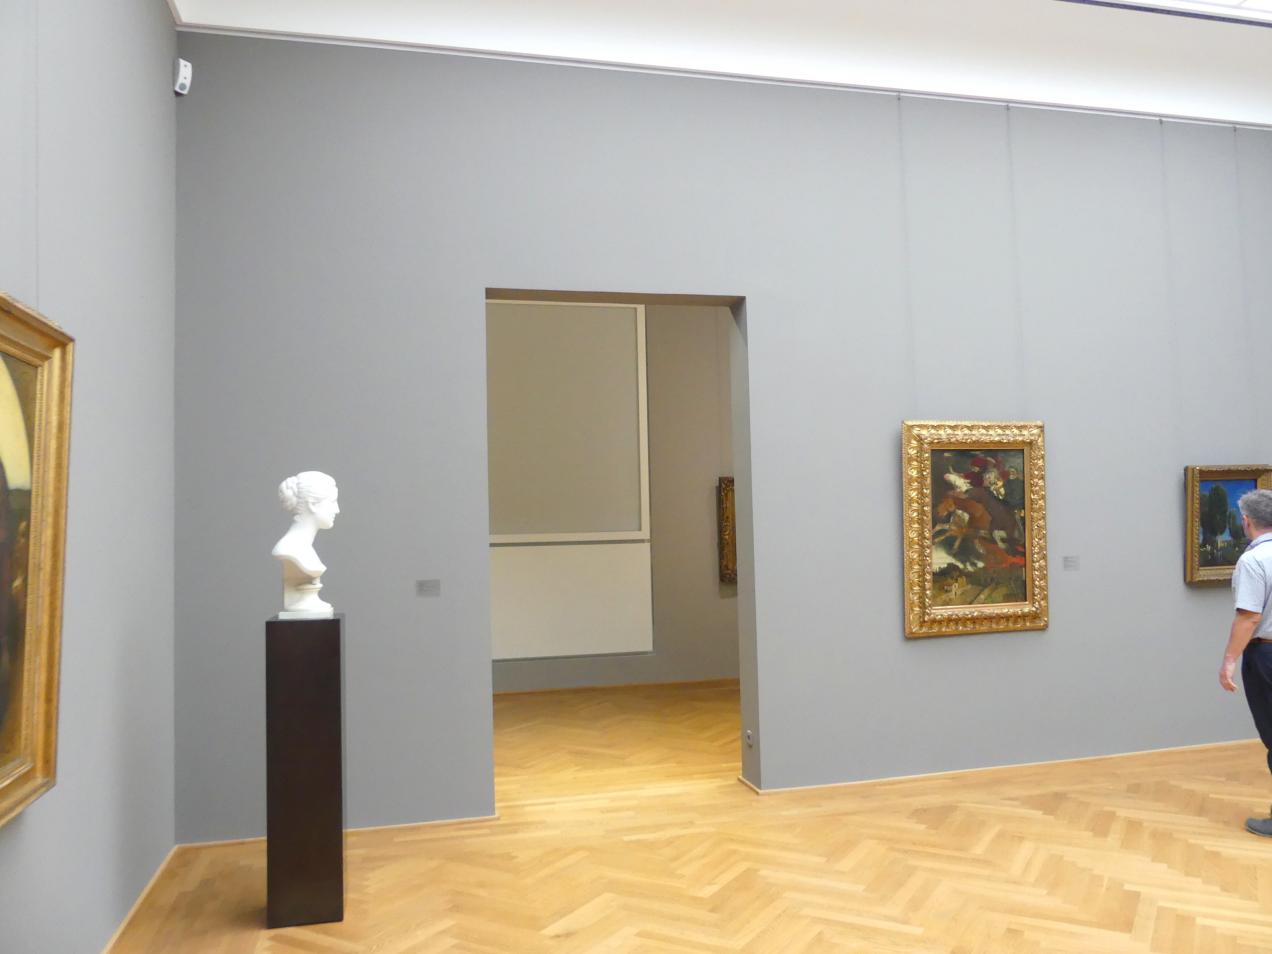 Dresden, Albertinum, Galerie Neue Meister, 2. Obergeschoss, Saal 6, Bild 2/2